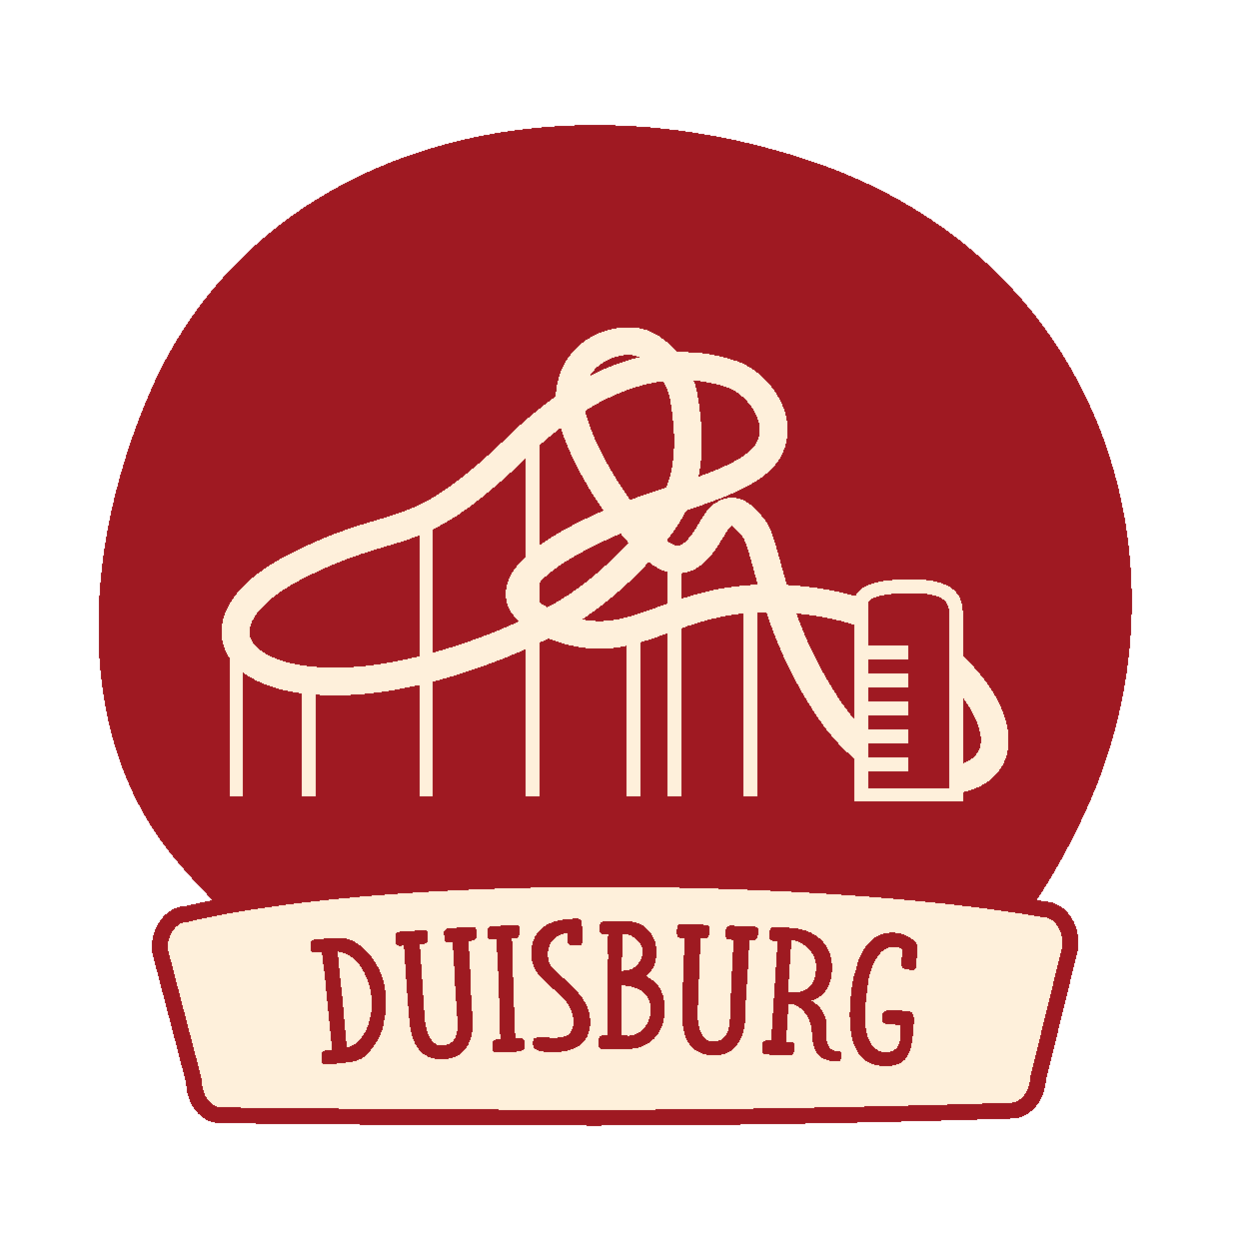 Dusiburg